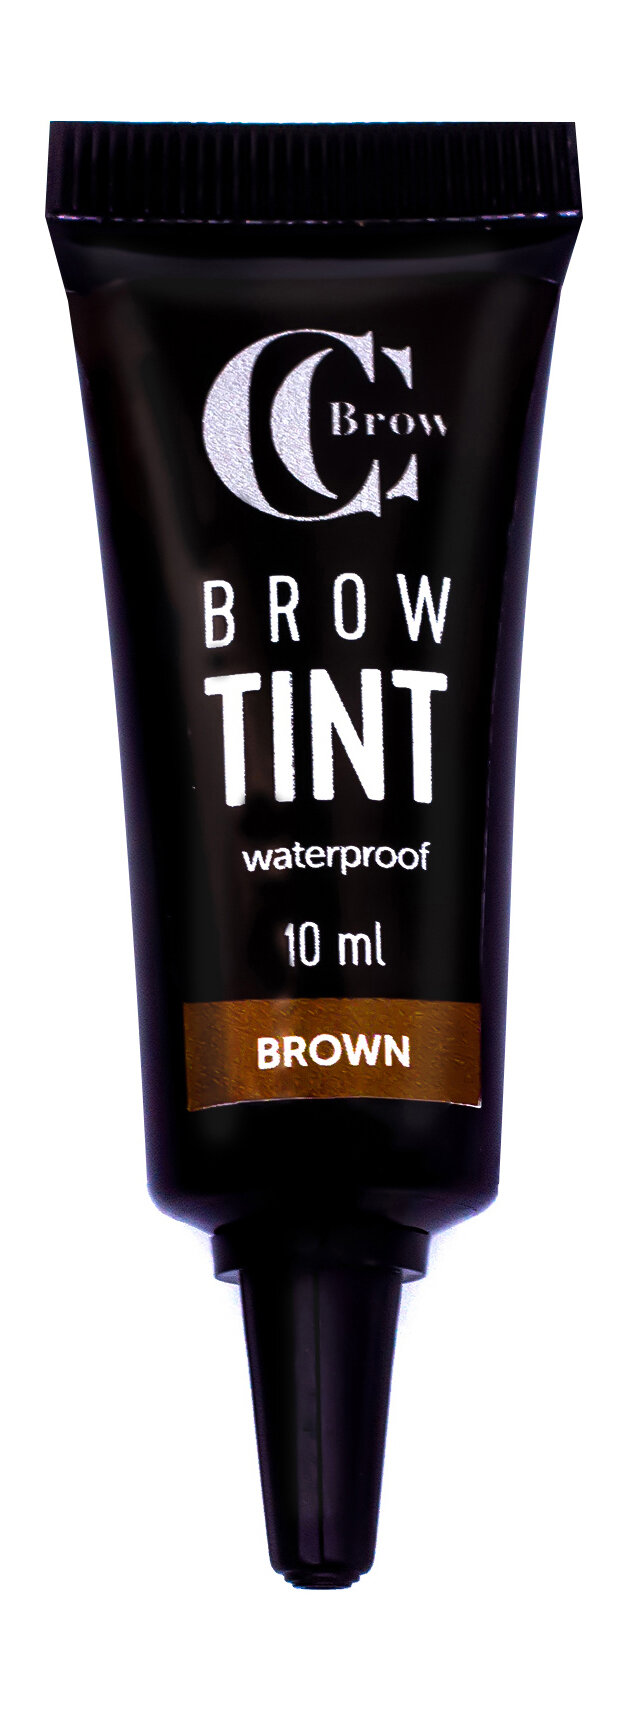 CC BROW Гелевый тинт для бровей Brow Tint CC Brow водостойкий, 10 мл, цвет коричневый (brown)